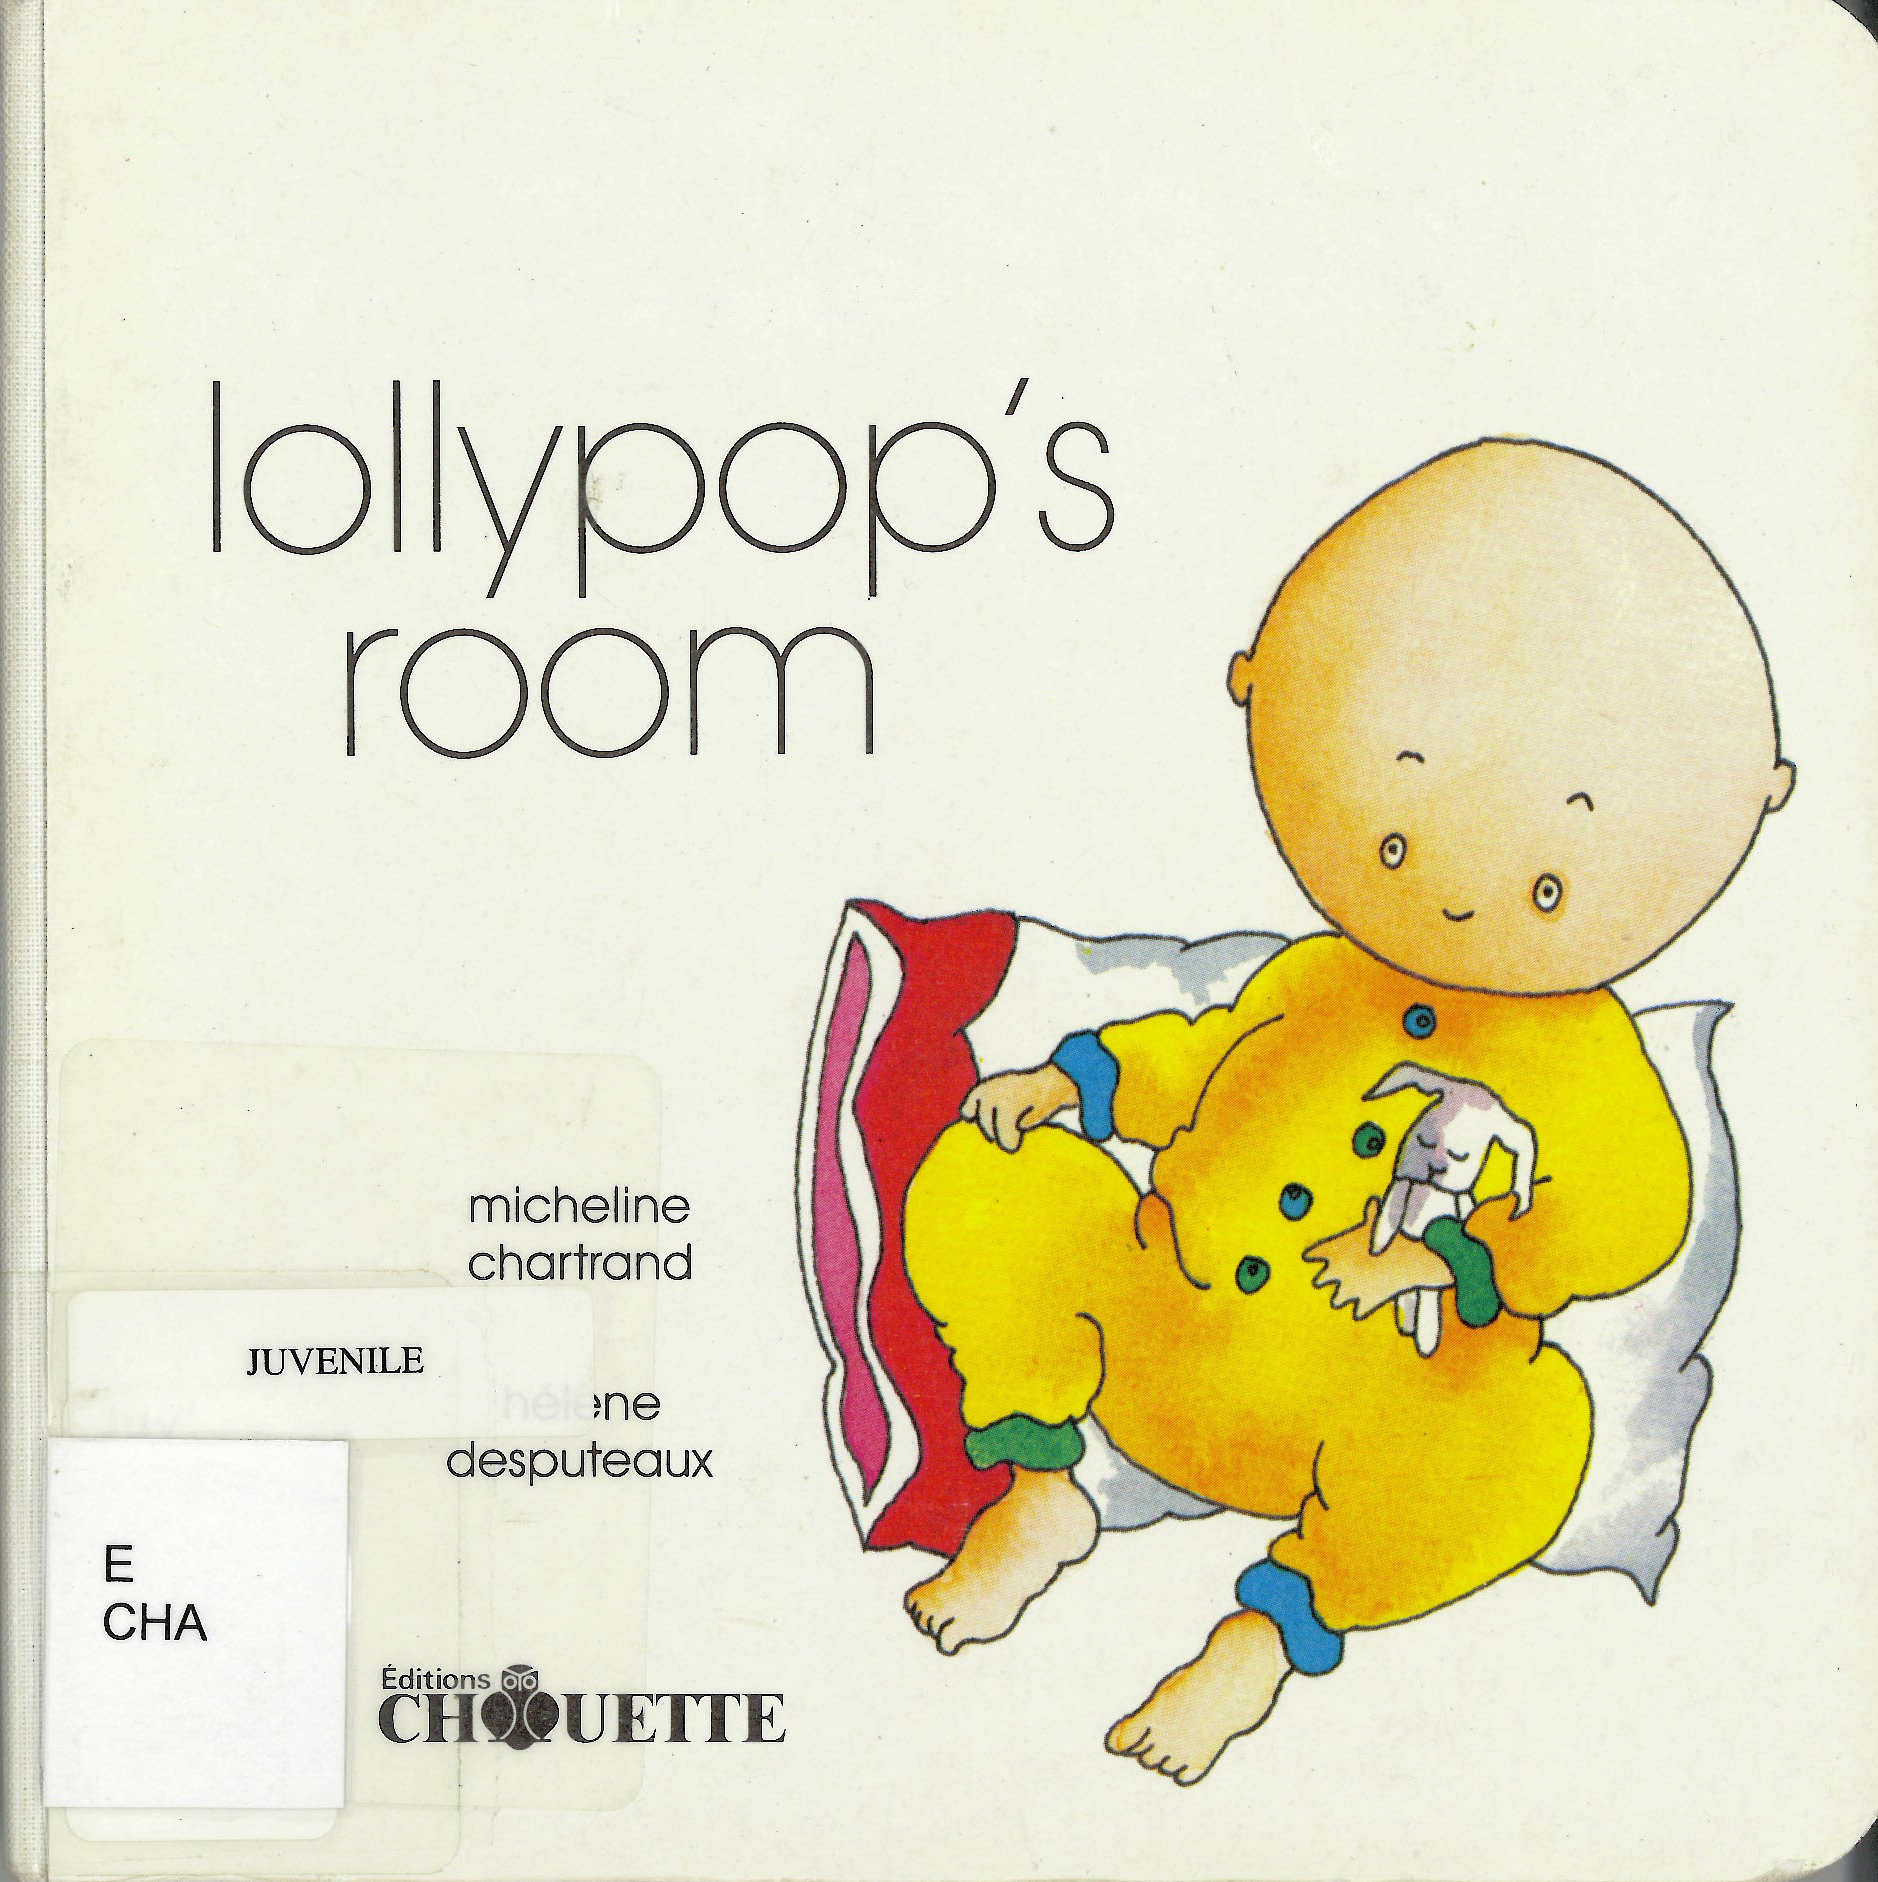 Lollypop's room